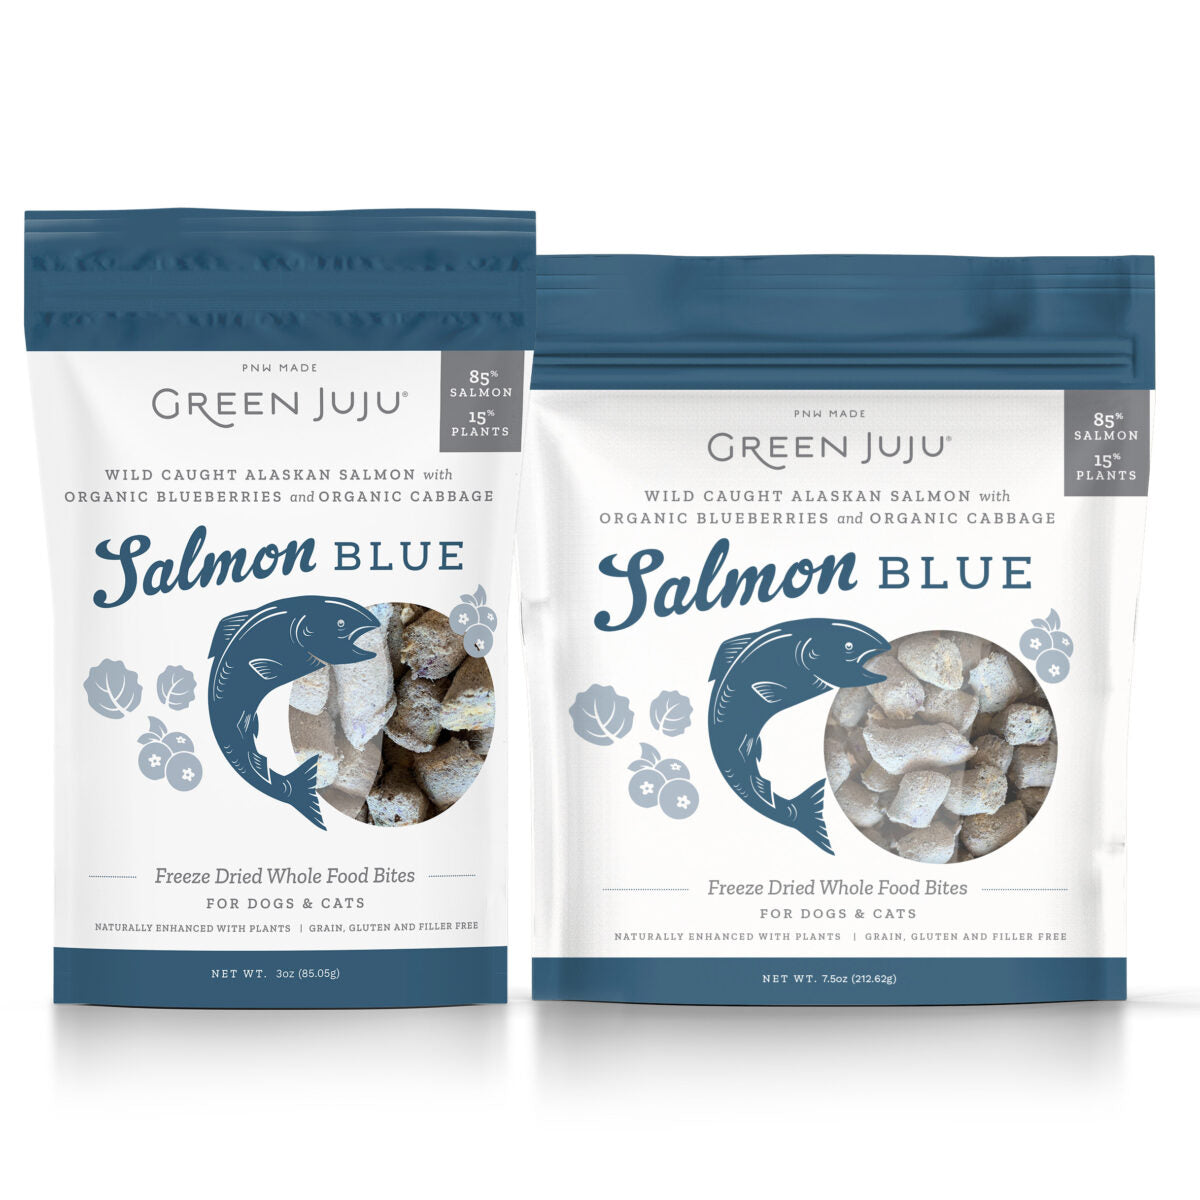 Green JuJu Salmon Blue Freeze Dried Food Bites